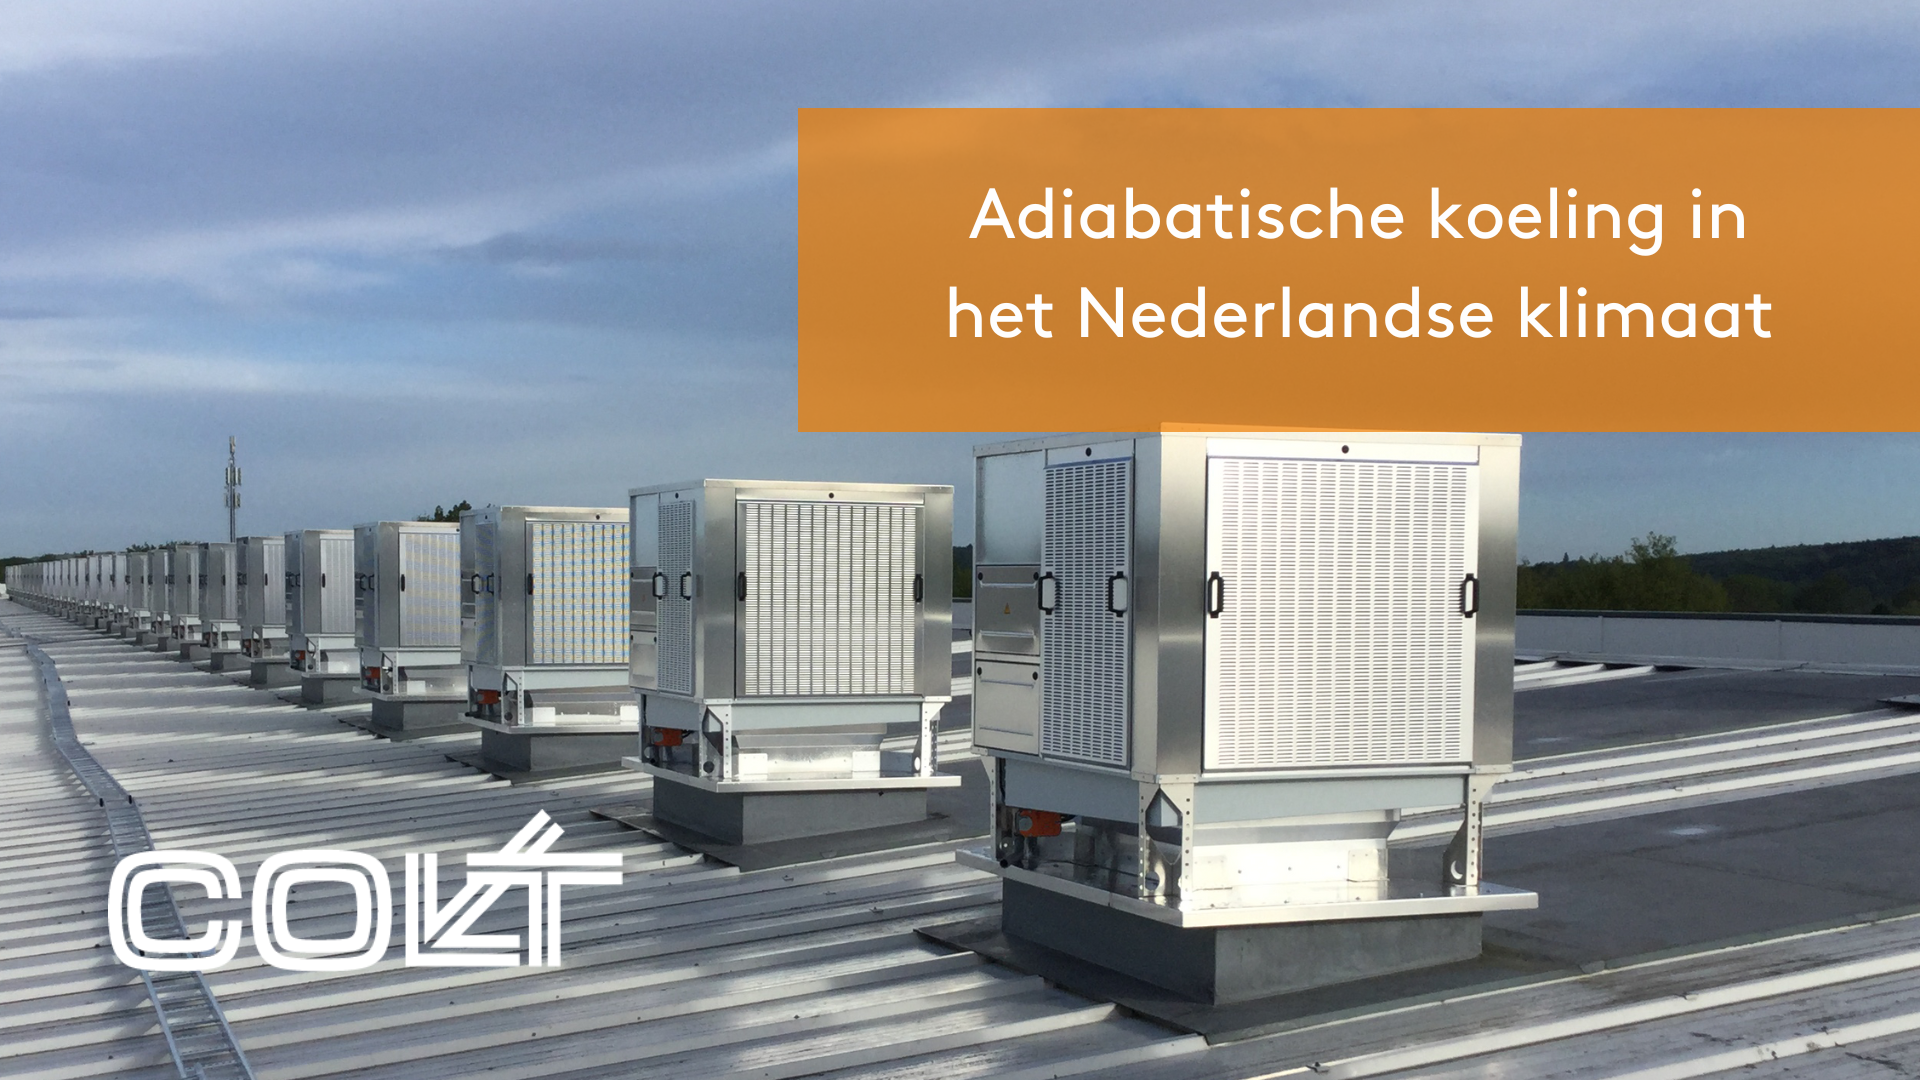 Werkt adiabatische koeling in het Nederlandse klimaat?